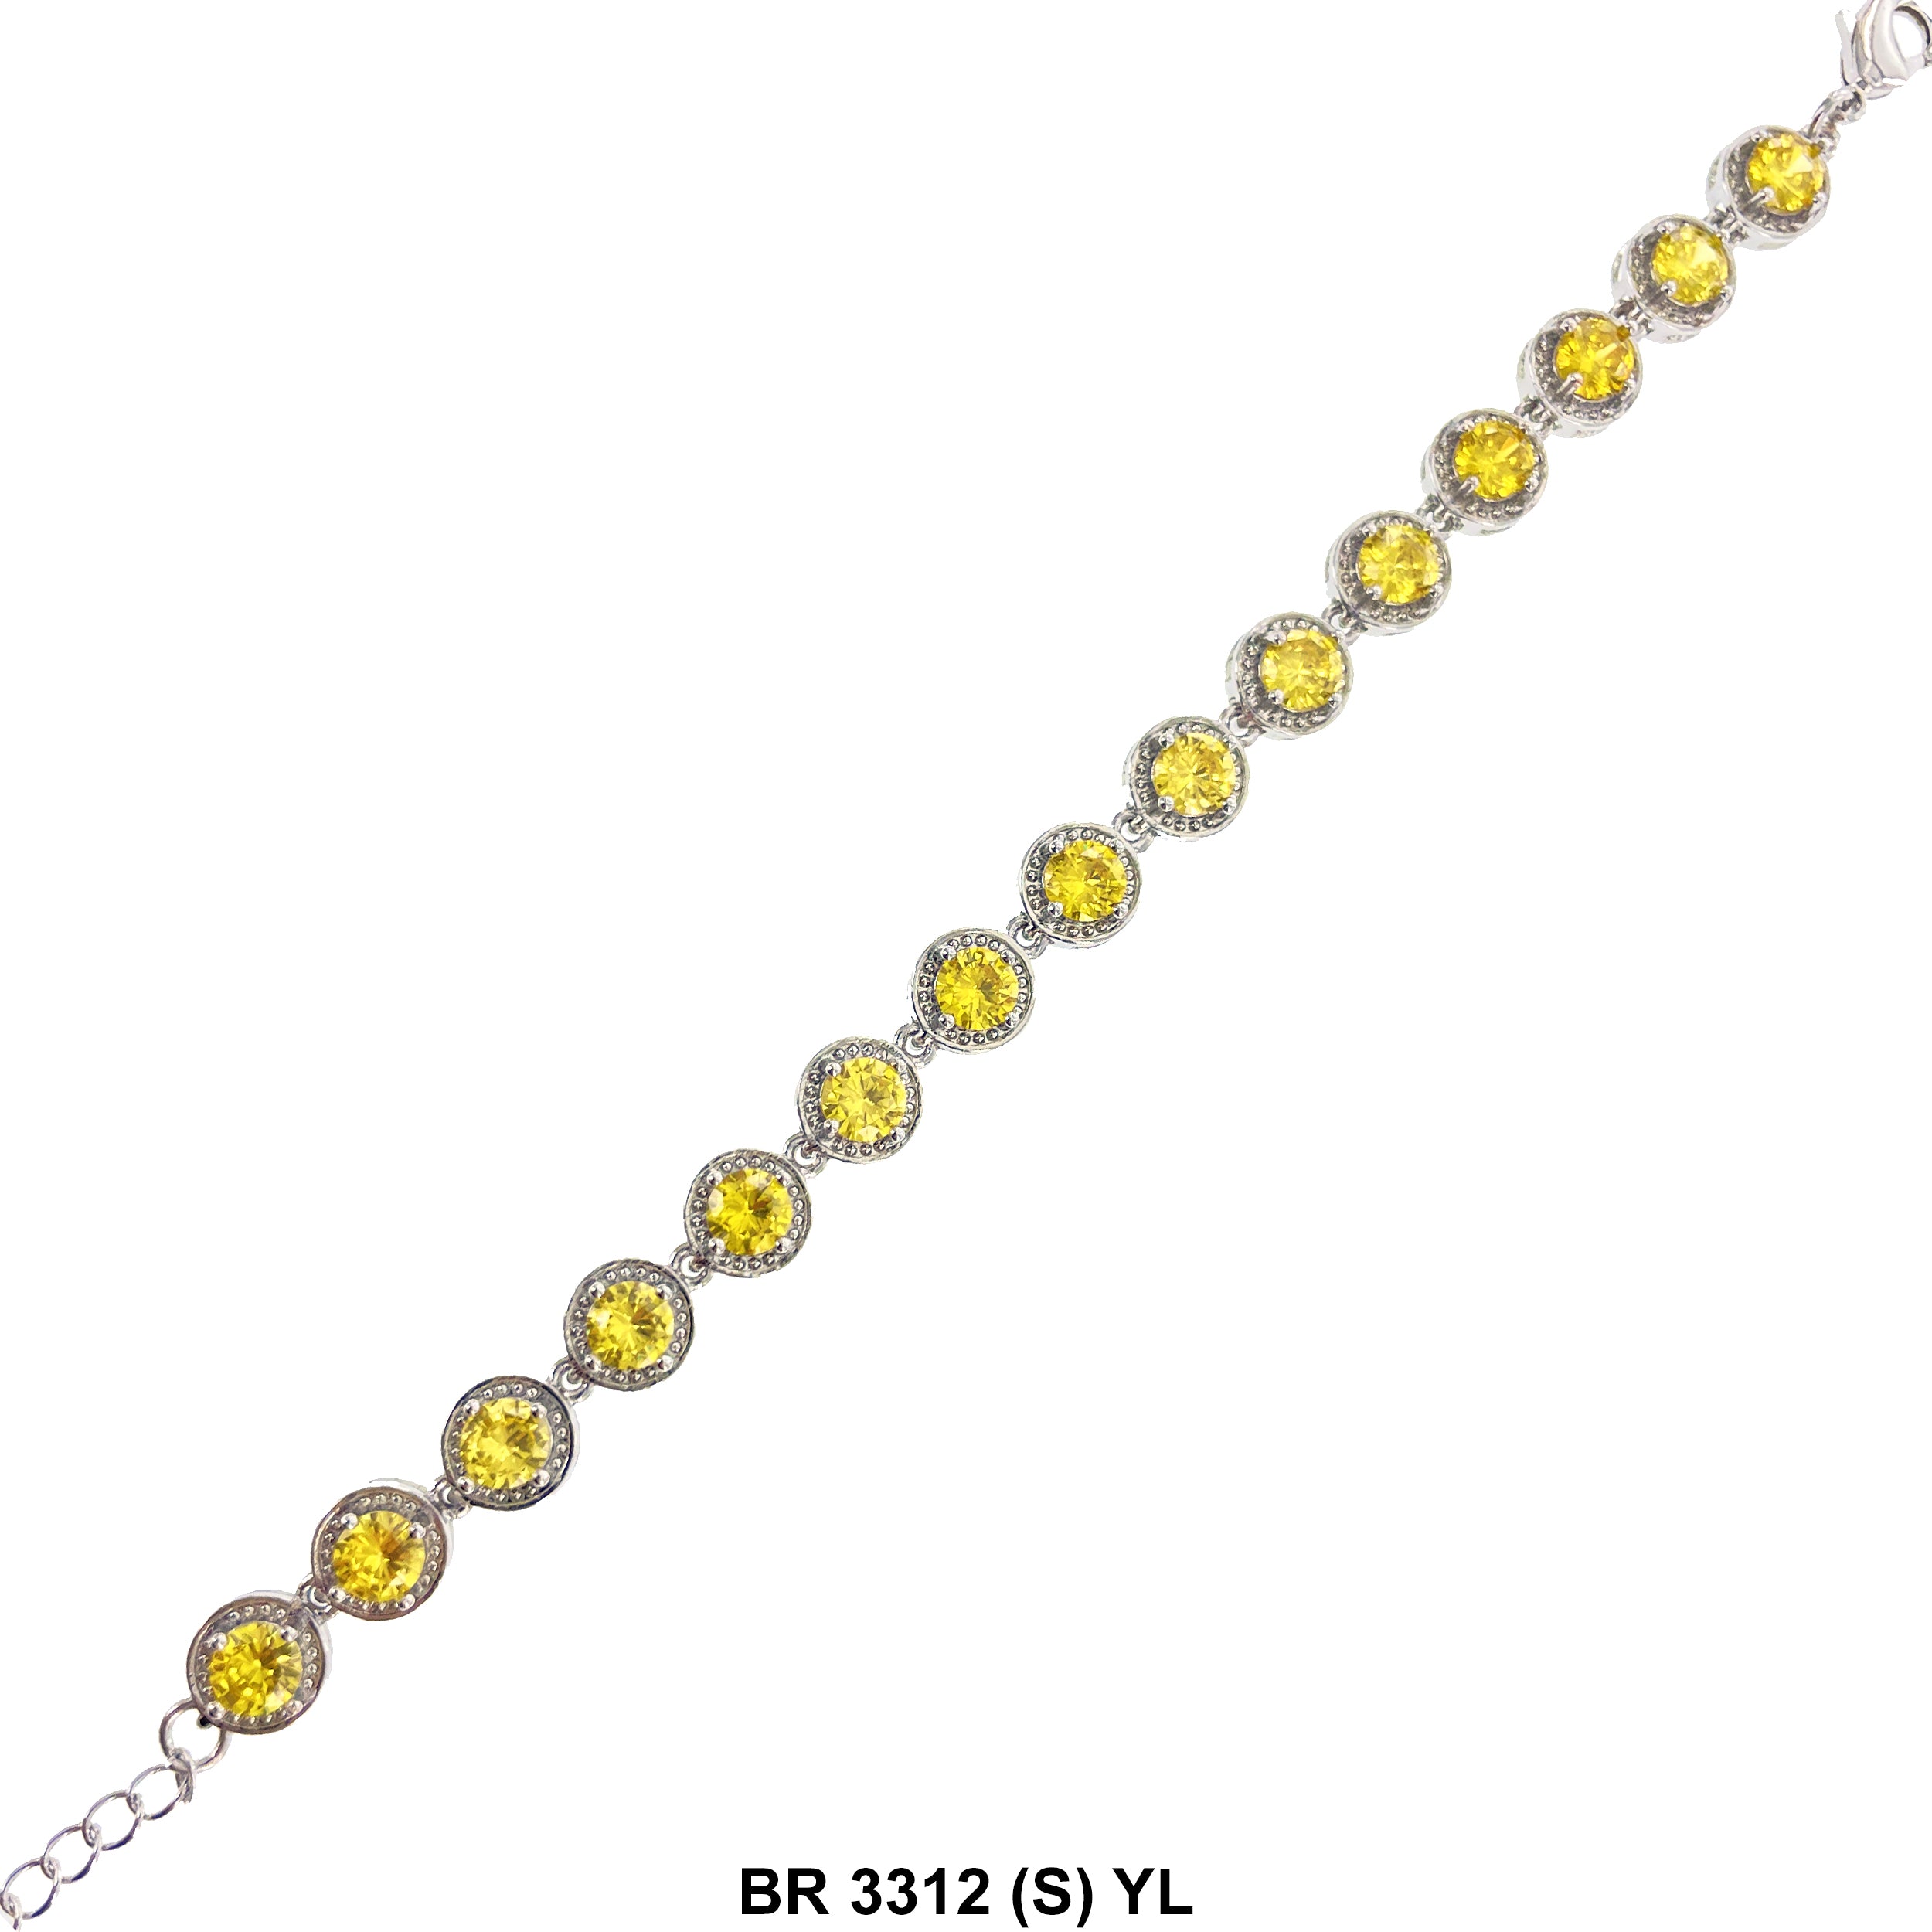 Cubic Zirconia Tennis Bracelet BR 3312 (S) YL